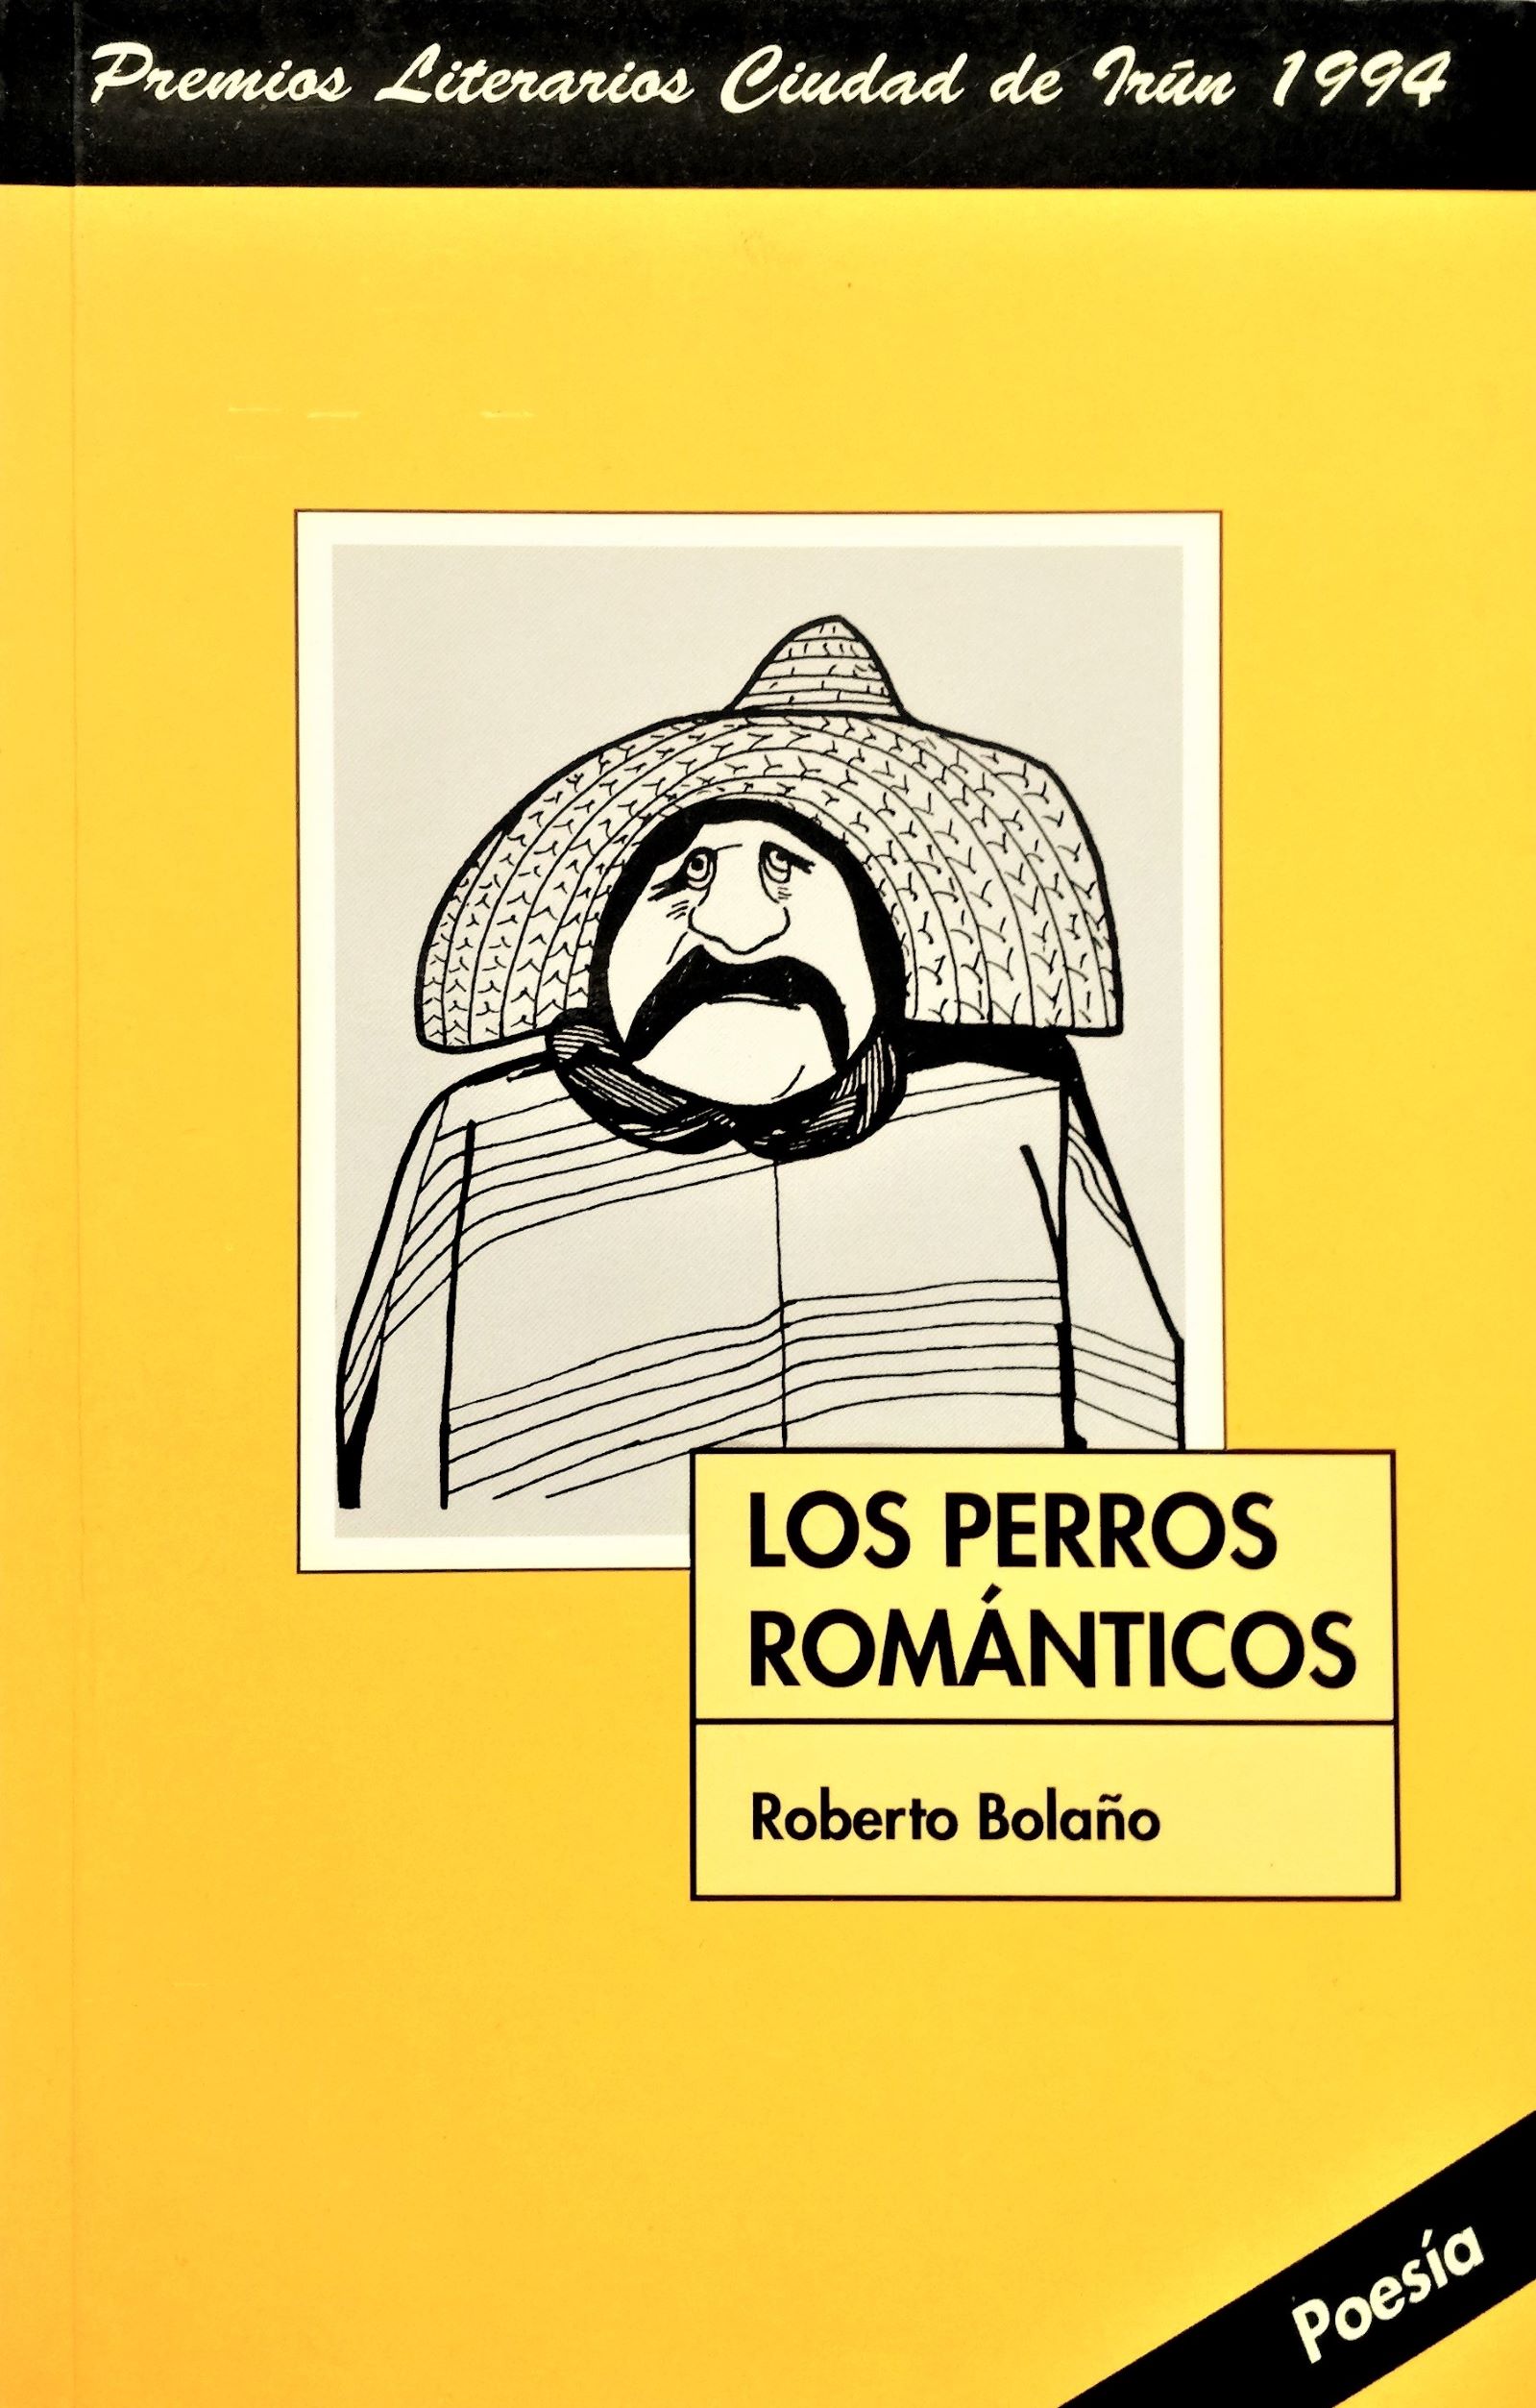 Roberto Bolaño - Los perros románticos 